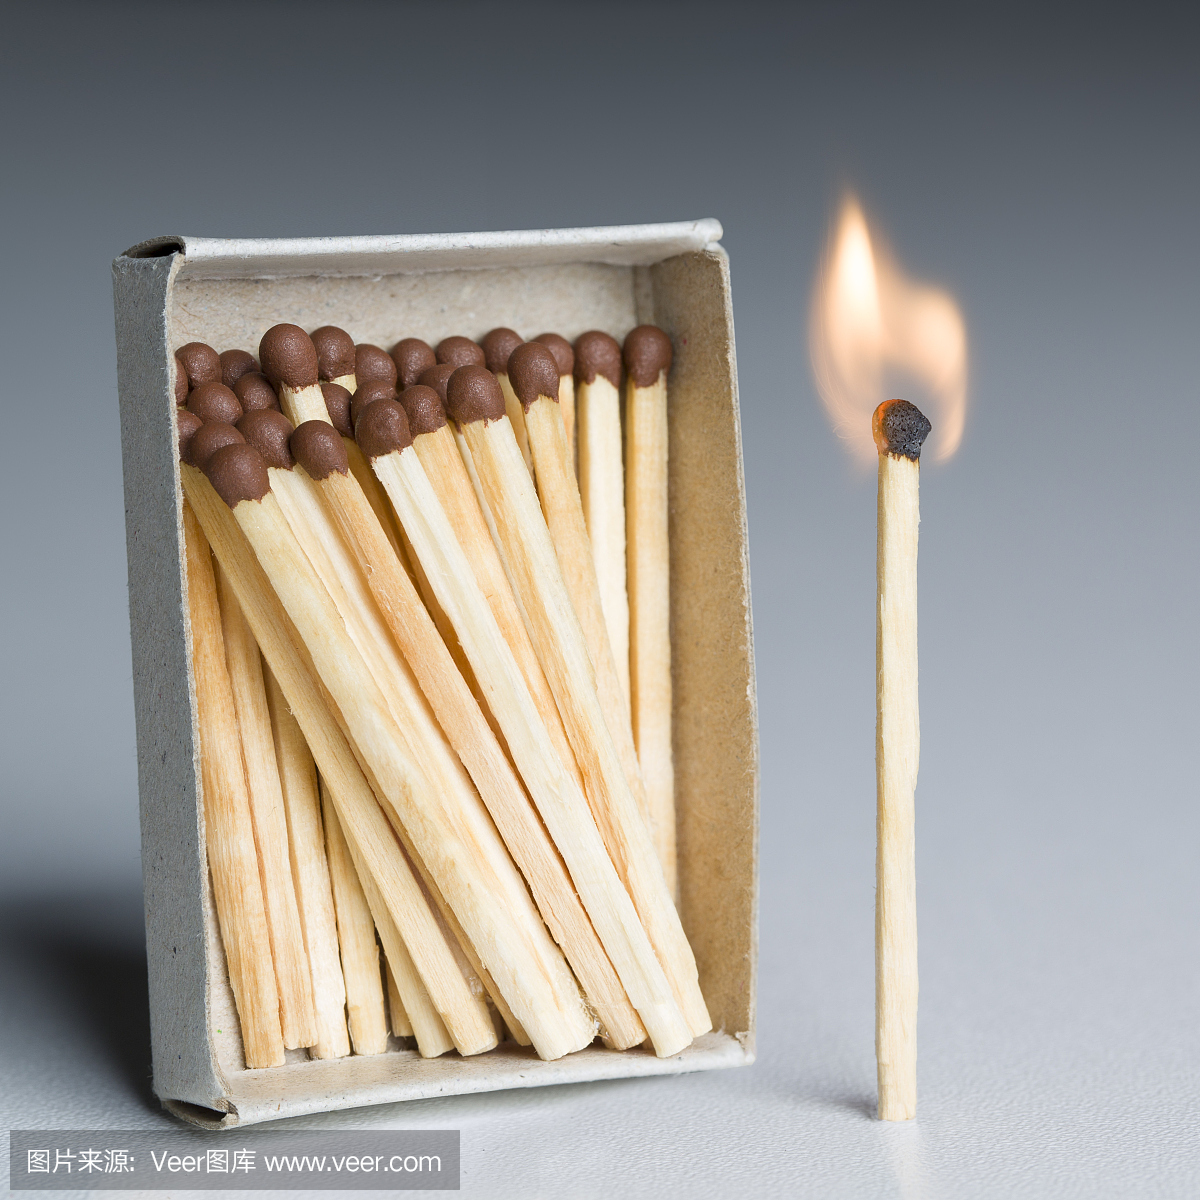 匹配盒,火匹配,火柴燃烧火焰作为创新理念